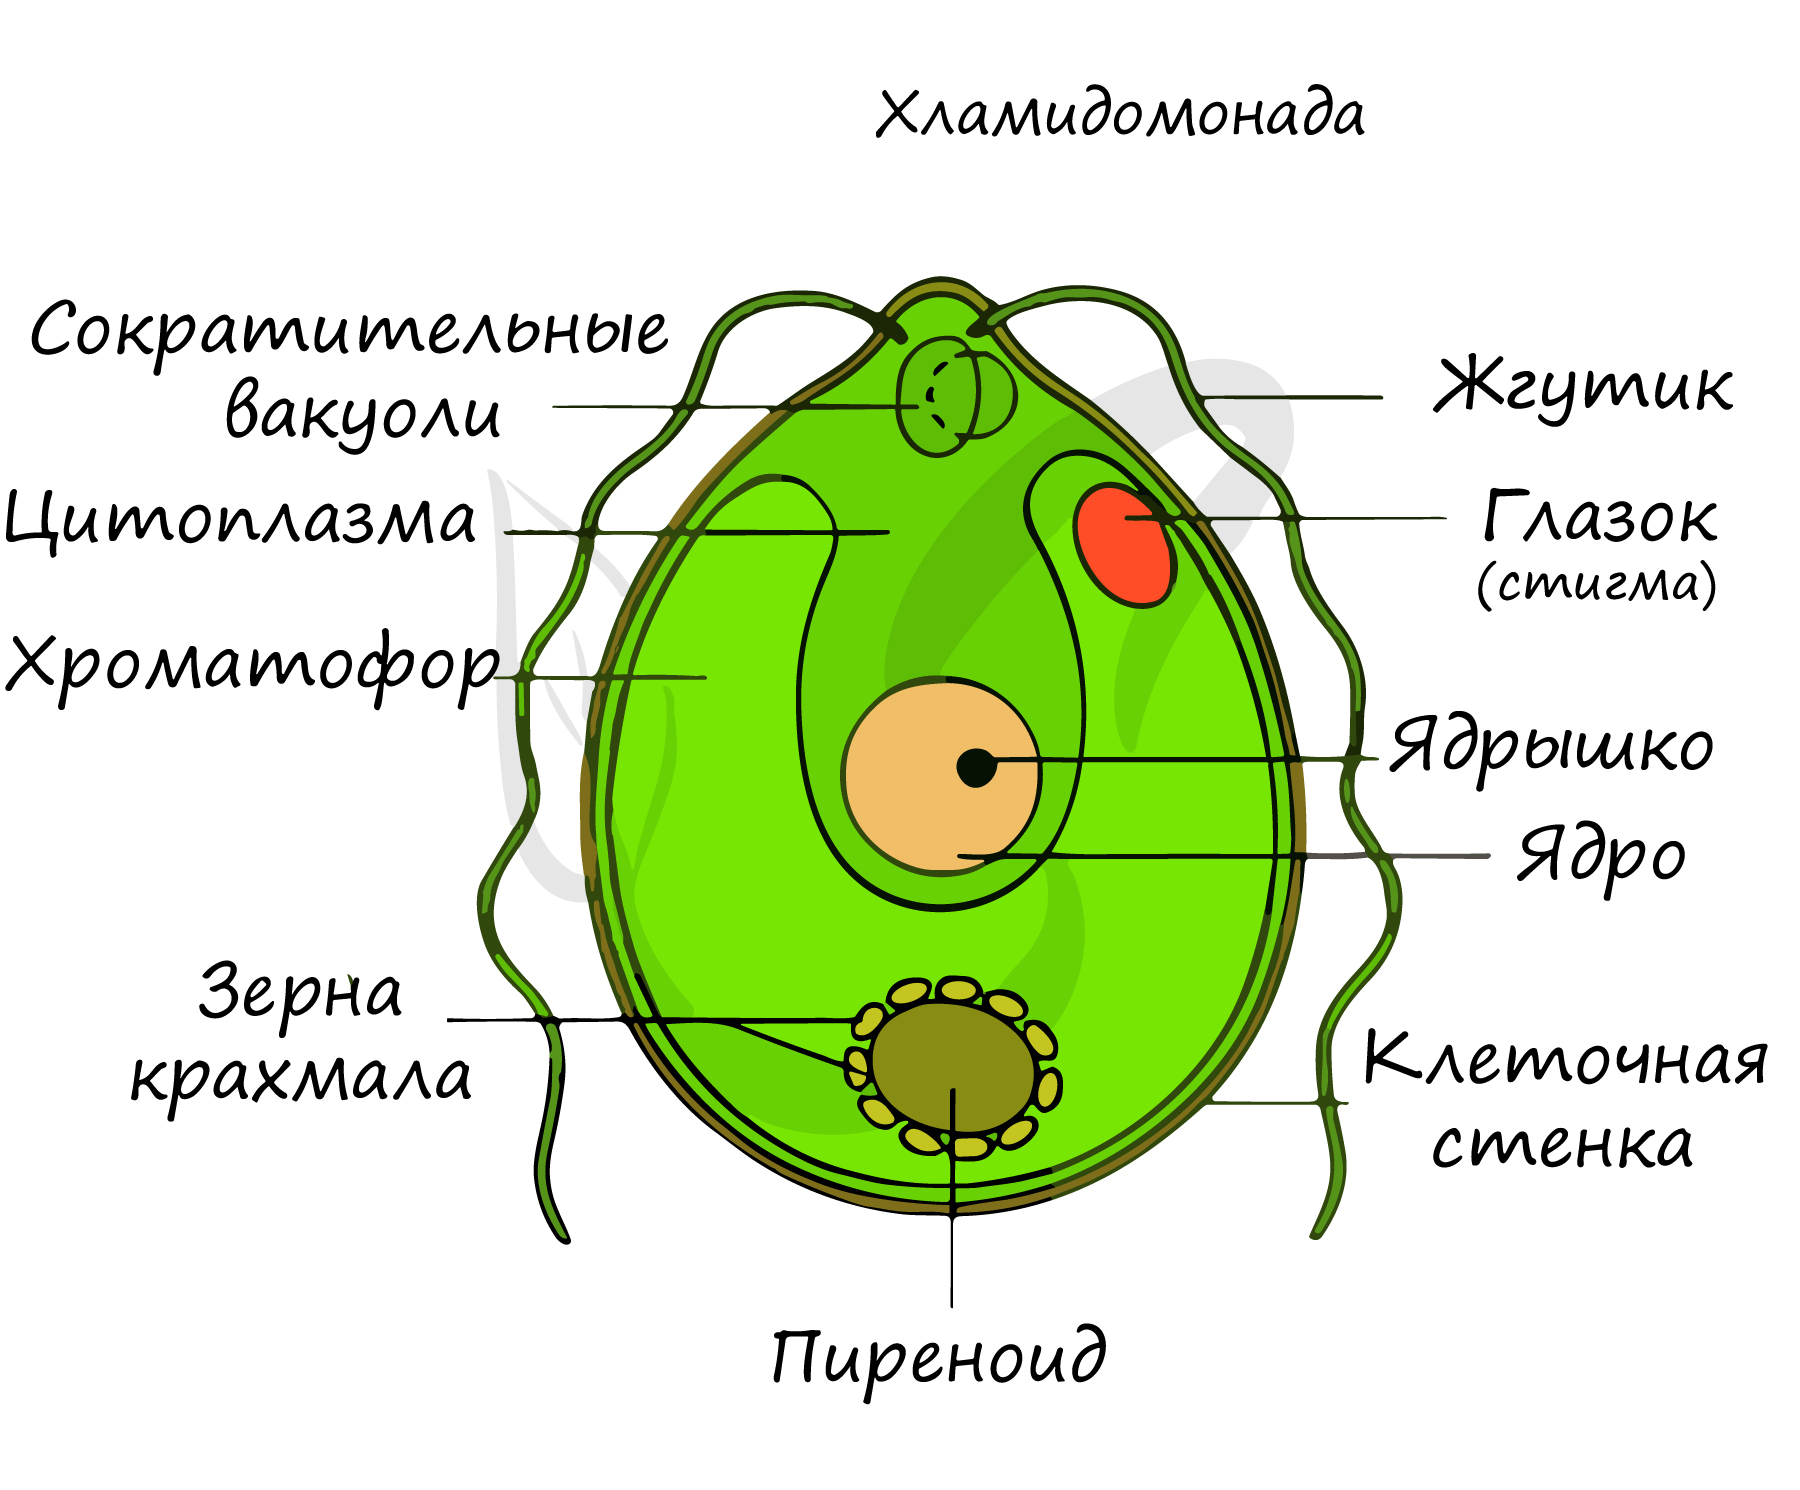 Известно что хламидомонада одноклеточная фотосинтезирующая зеленая водоросль. Хламидомонада и хлорелла. Одноклеточная водоросль хламидомонада. Строение клетки Chlamydomonas. Строение одноклеточных зеленых водорослей.